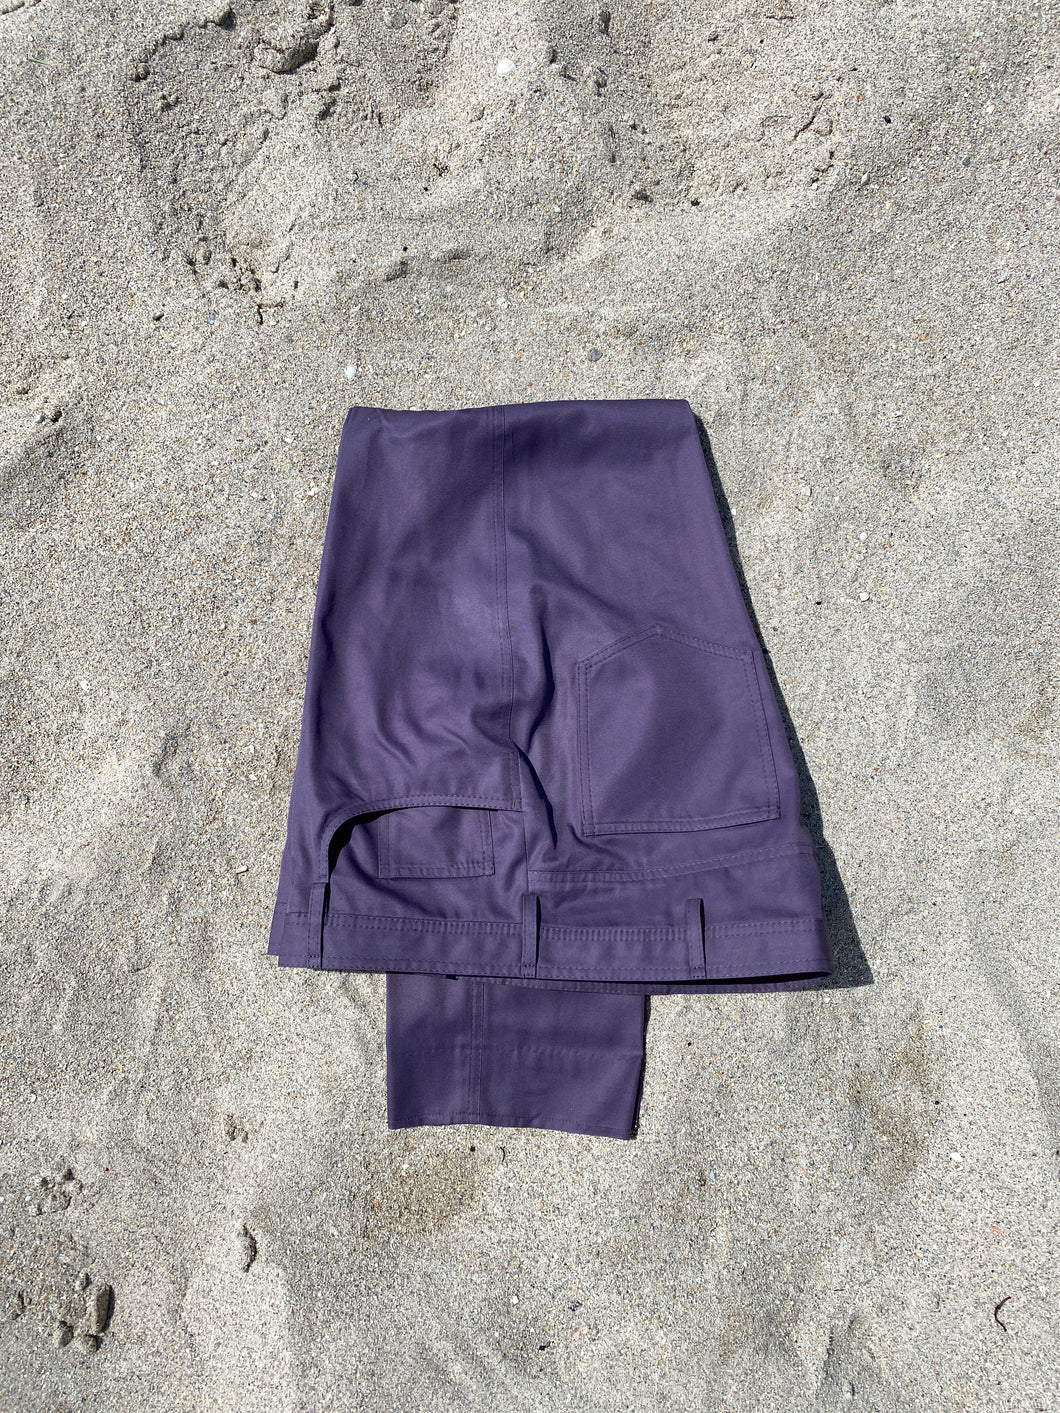 FIVEL Five Pocket Trouser in Gabardilla by Solbiati